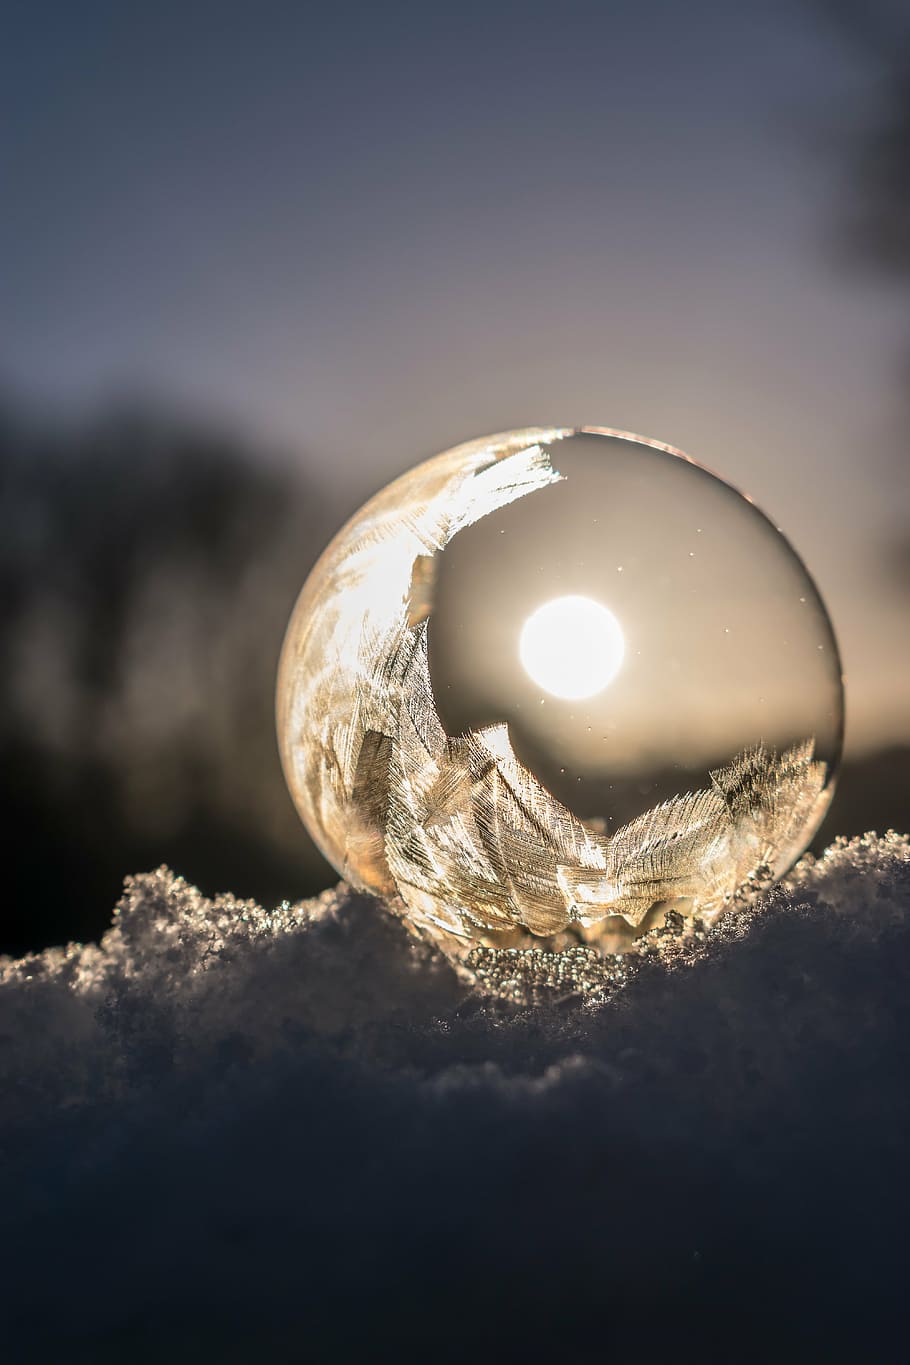 claro, fotografía de pelota, amanecer, pompas de jabón, congelado, burbuja congelada, invierno, frío, nieve, bola